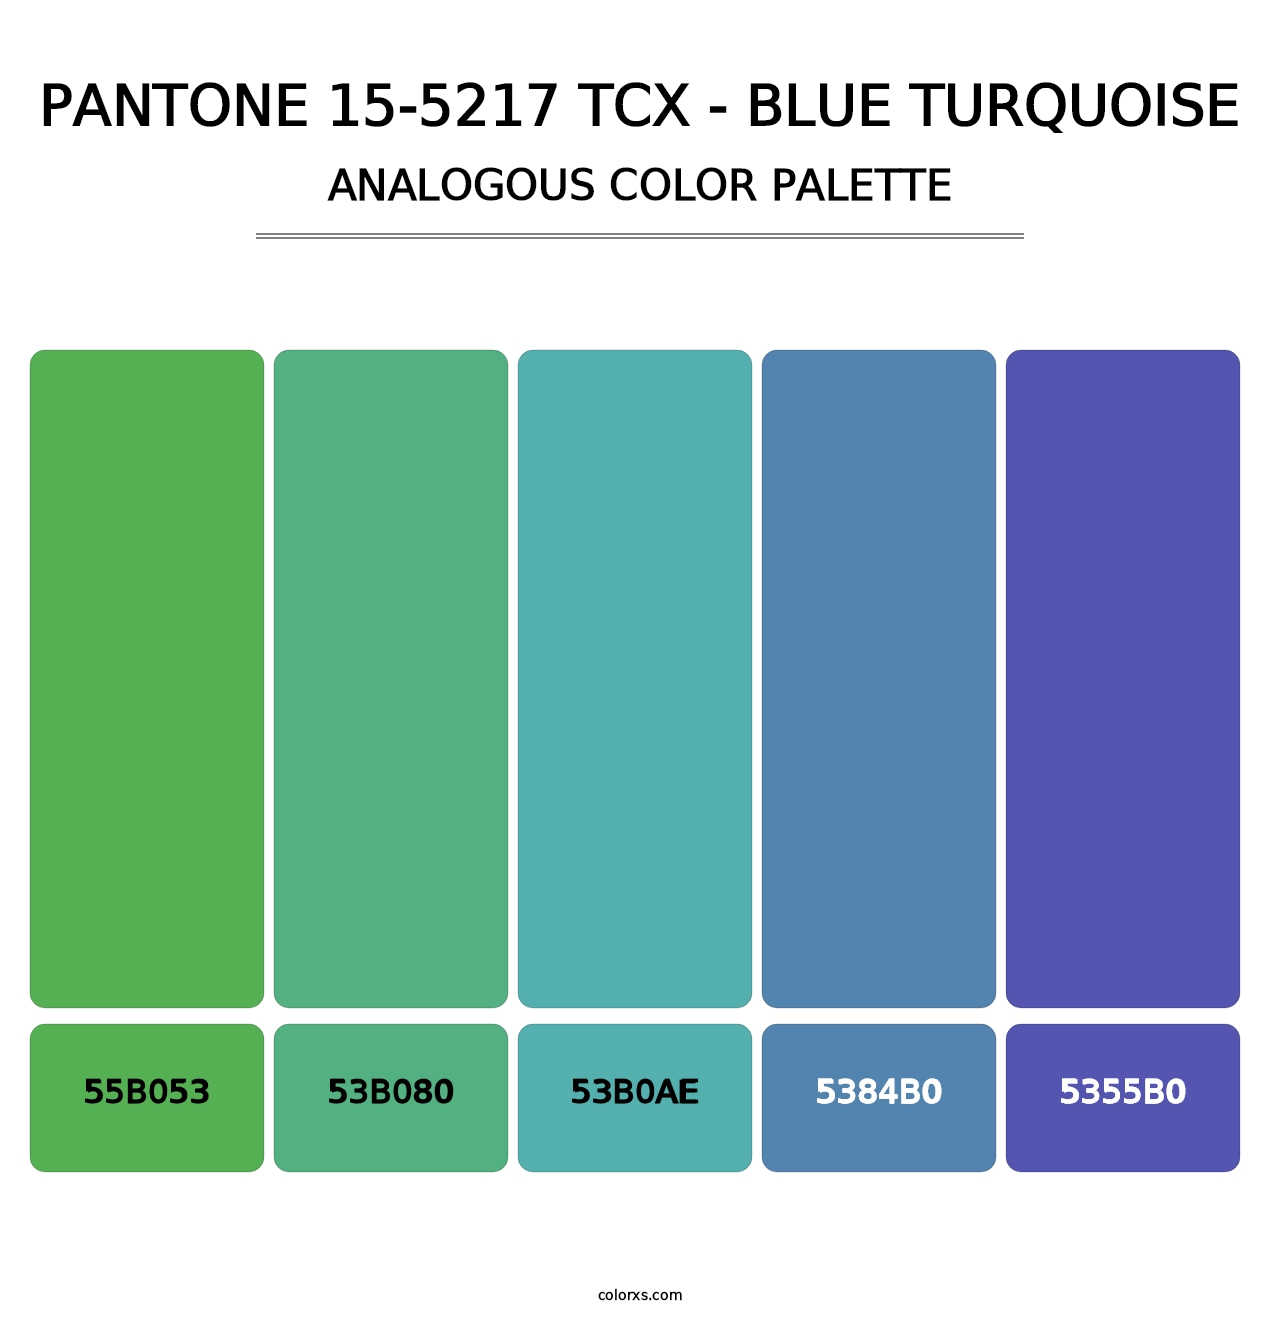 PANTONE 15-5217 TCX - Blue Turquoise - Analogous Color Palette